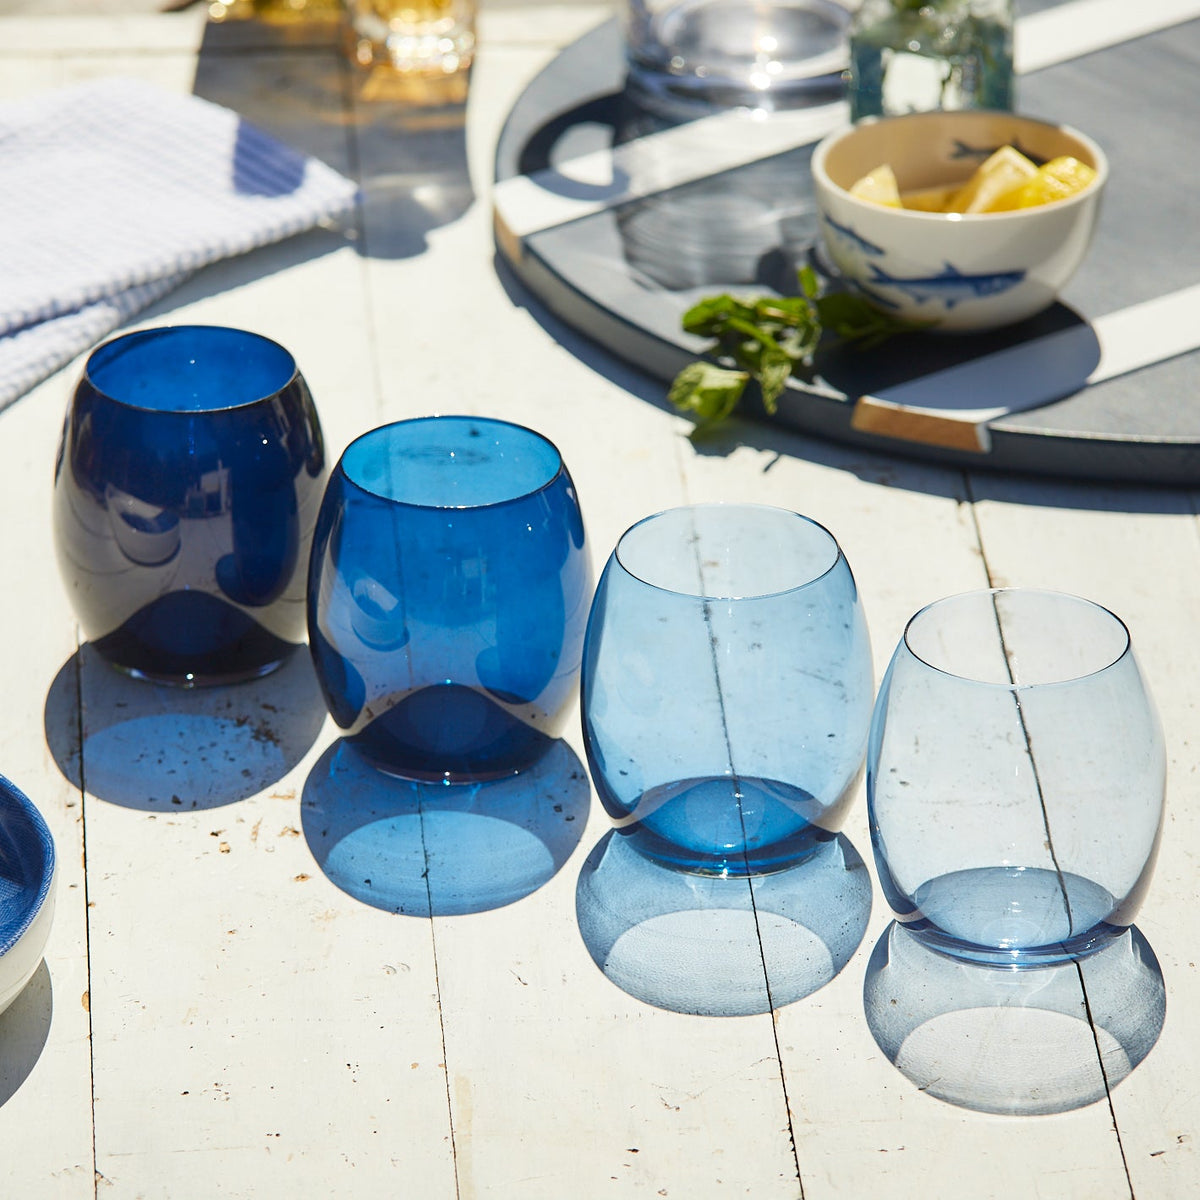 A set of Les Nuages Blue Ombré Glasses Set of 4 by Caskata on a table.